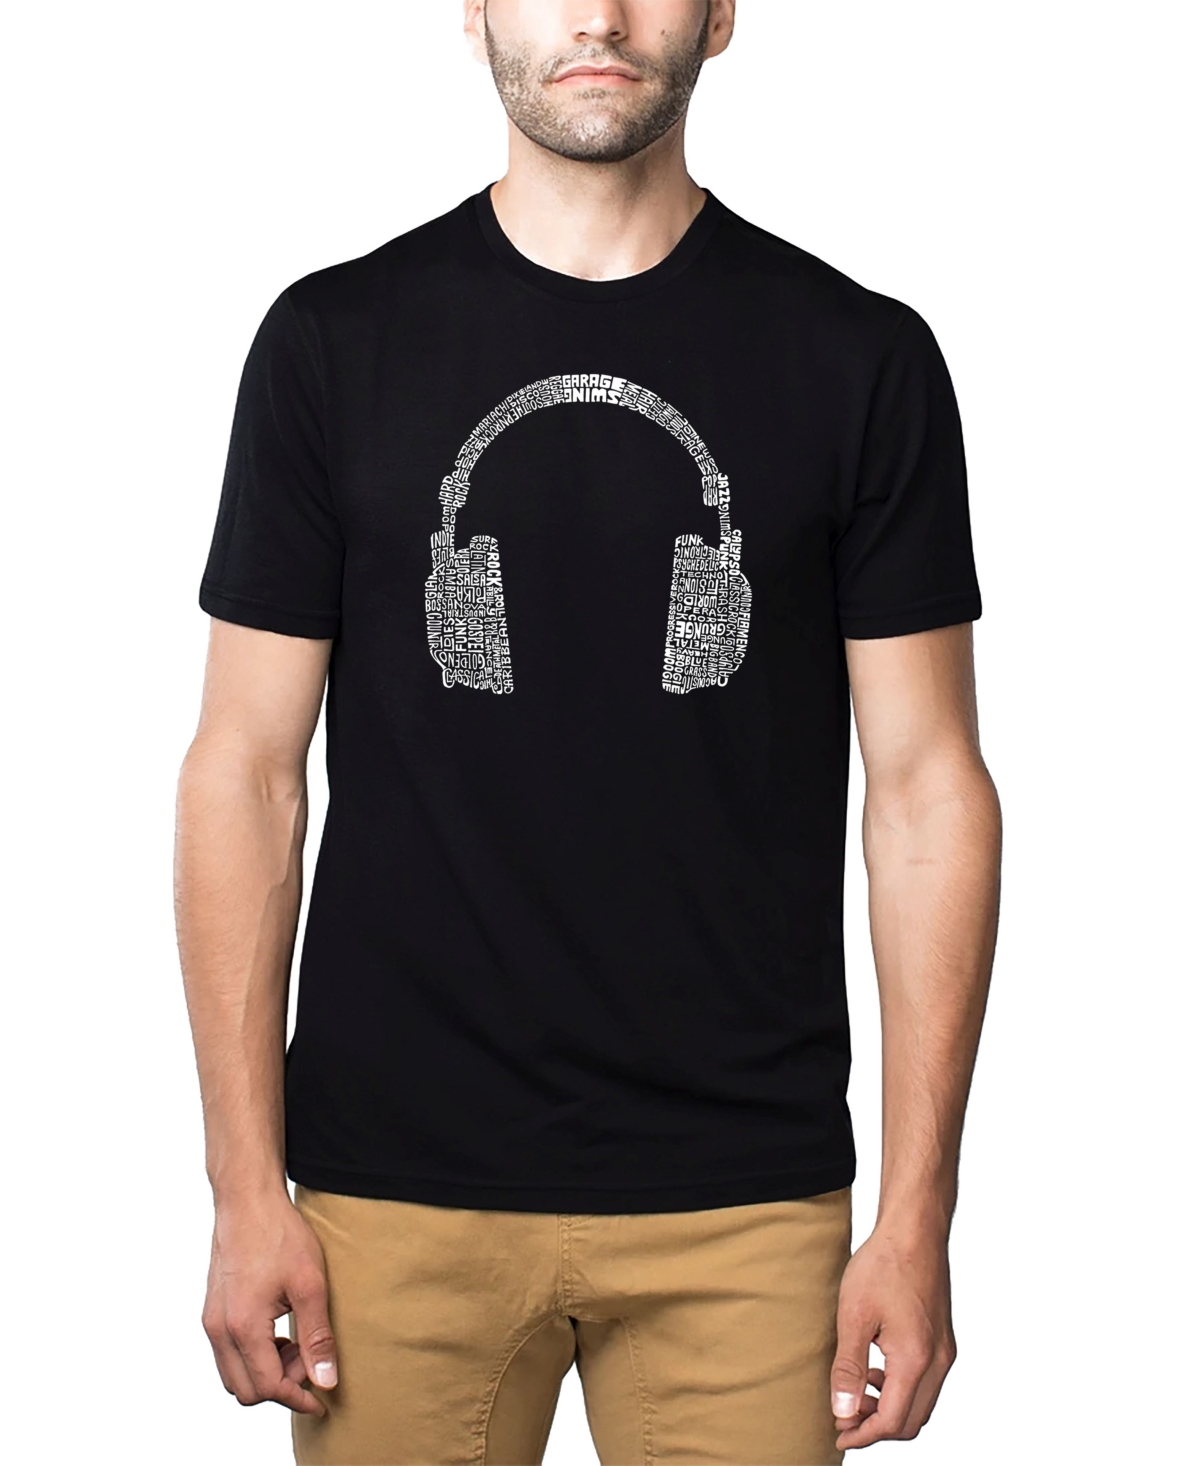 Mens Premium Blend Word Art T-Shirt - Headphones - Music Genres - Black